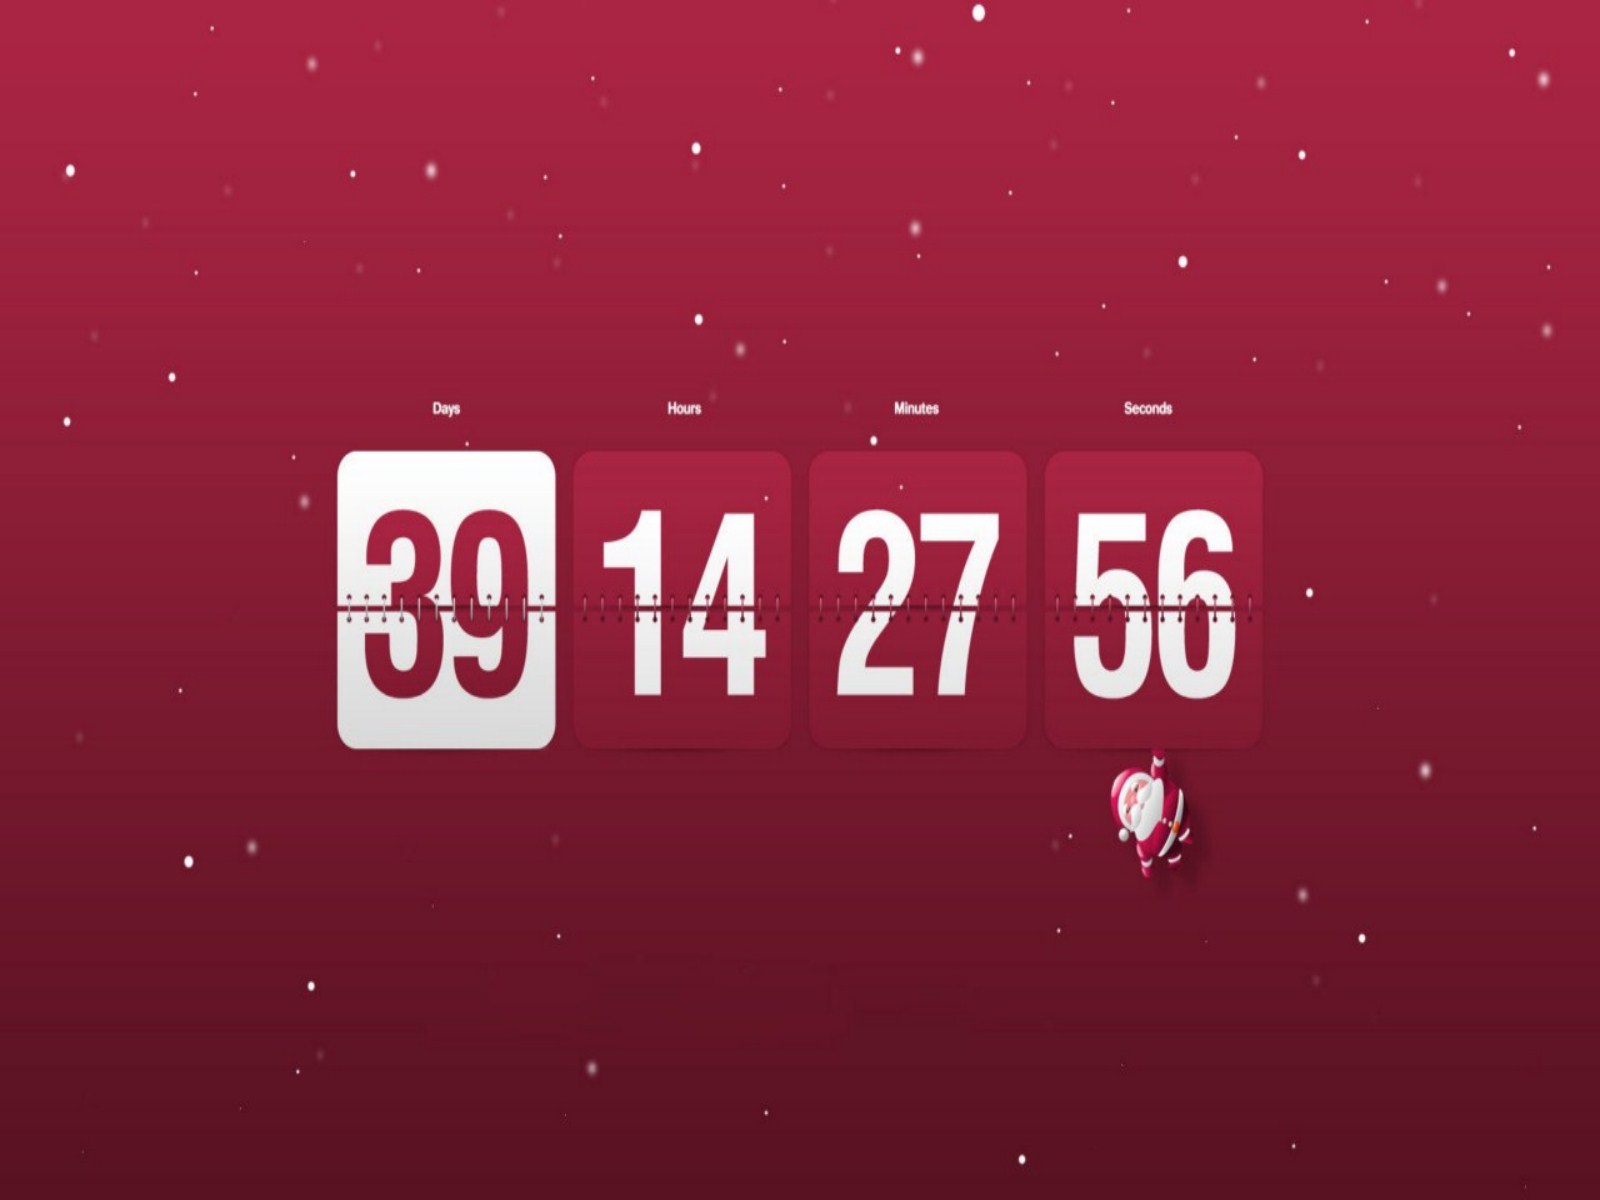 Countdown To Christmas Wallpaper Jpeg